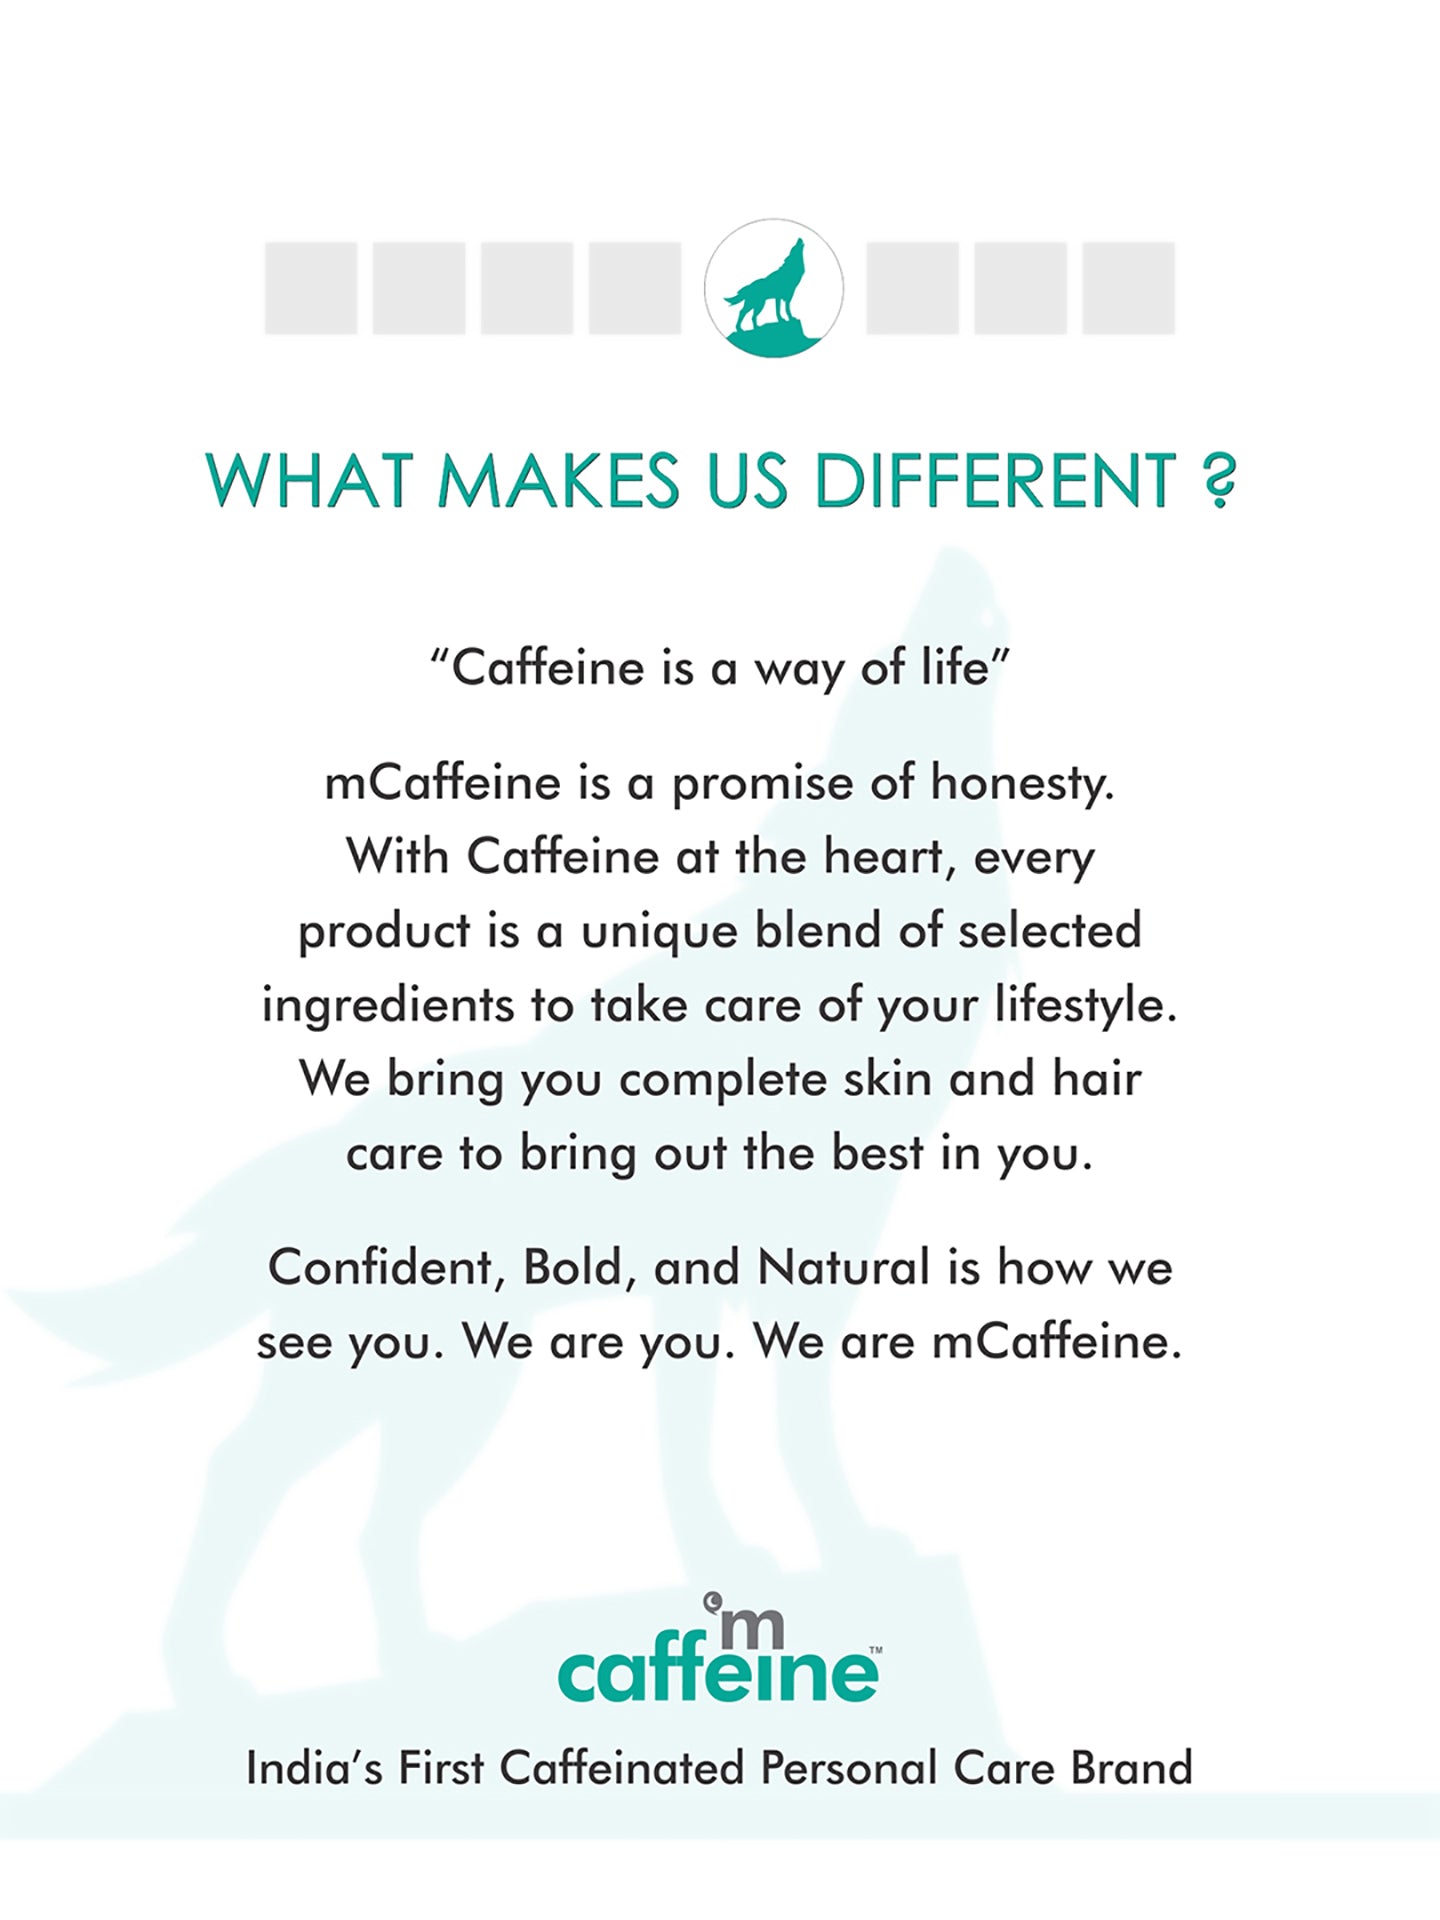 mCaffeine Coffee Body Essentials Gift Set